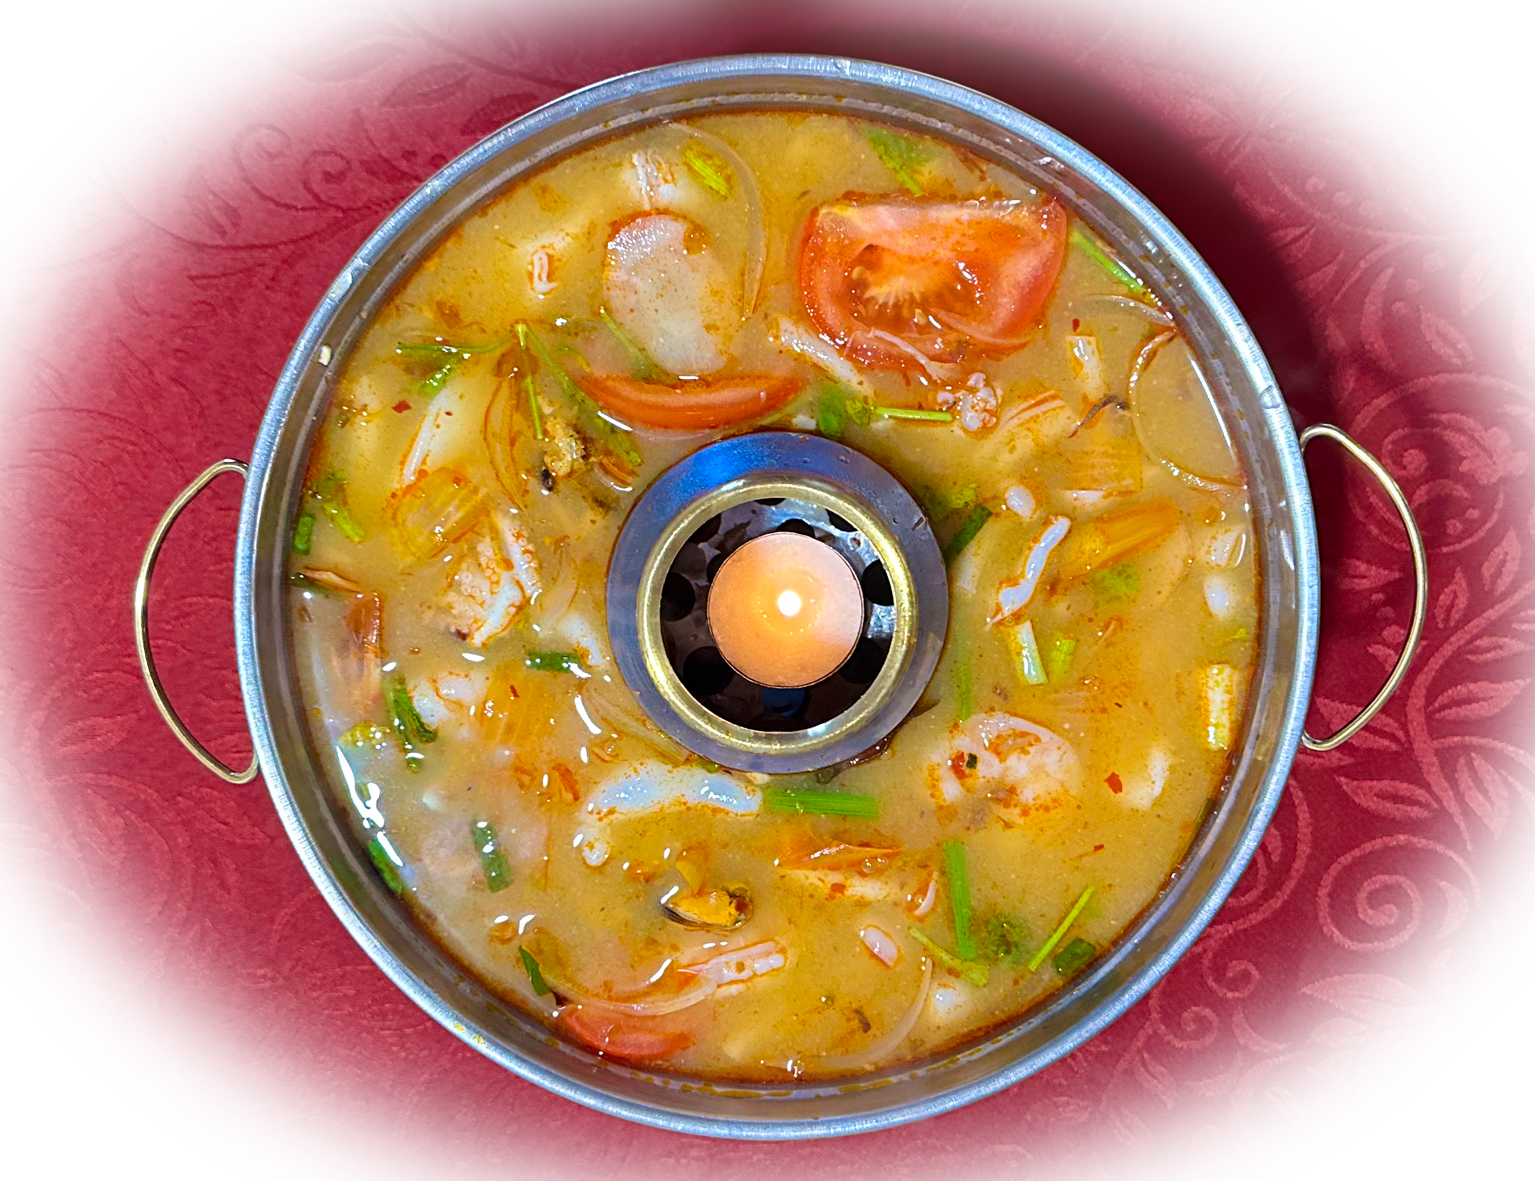 Die Tomyam-Suppe mit Meeresfrüchten ist eine würzige thailändische Delikatesse. Ihre orangefarbene B